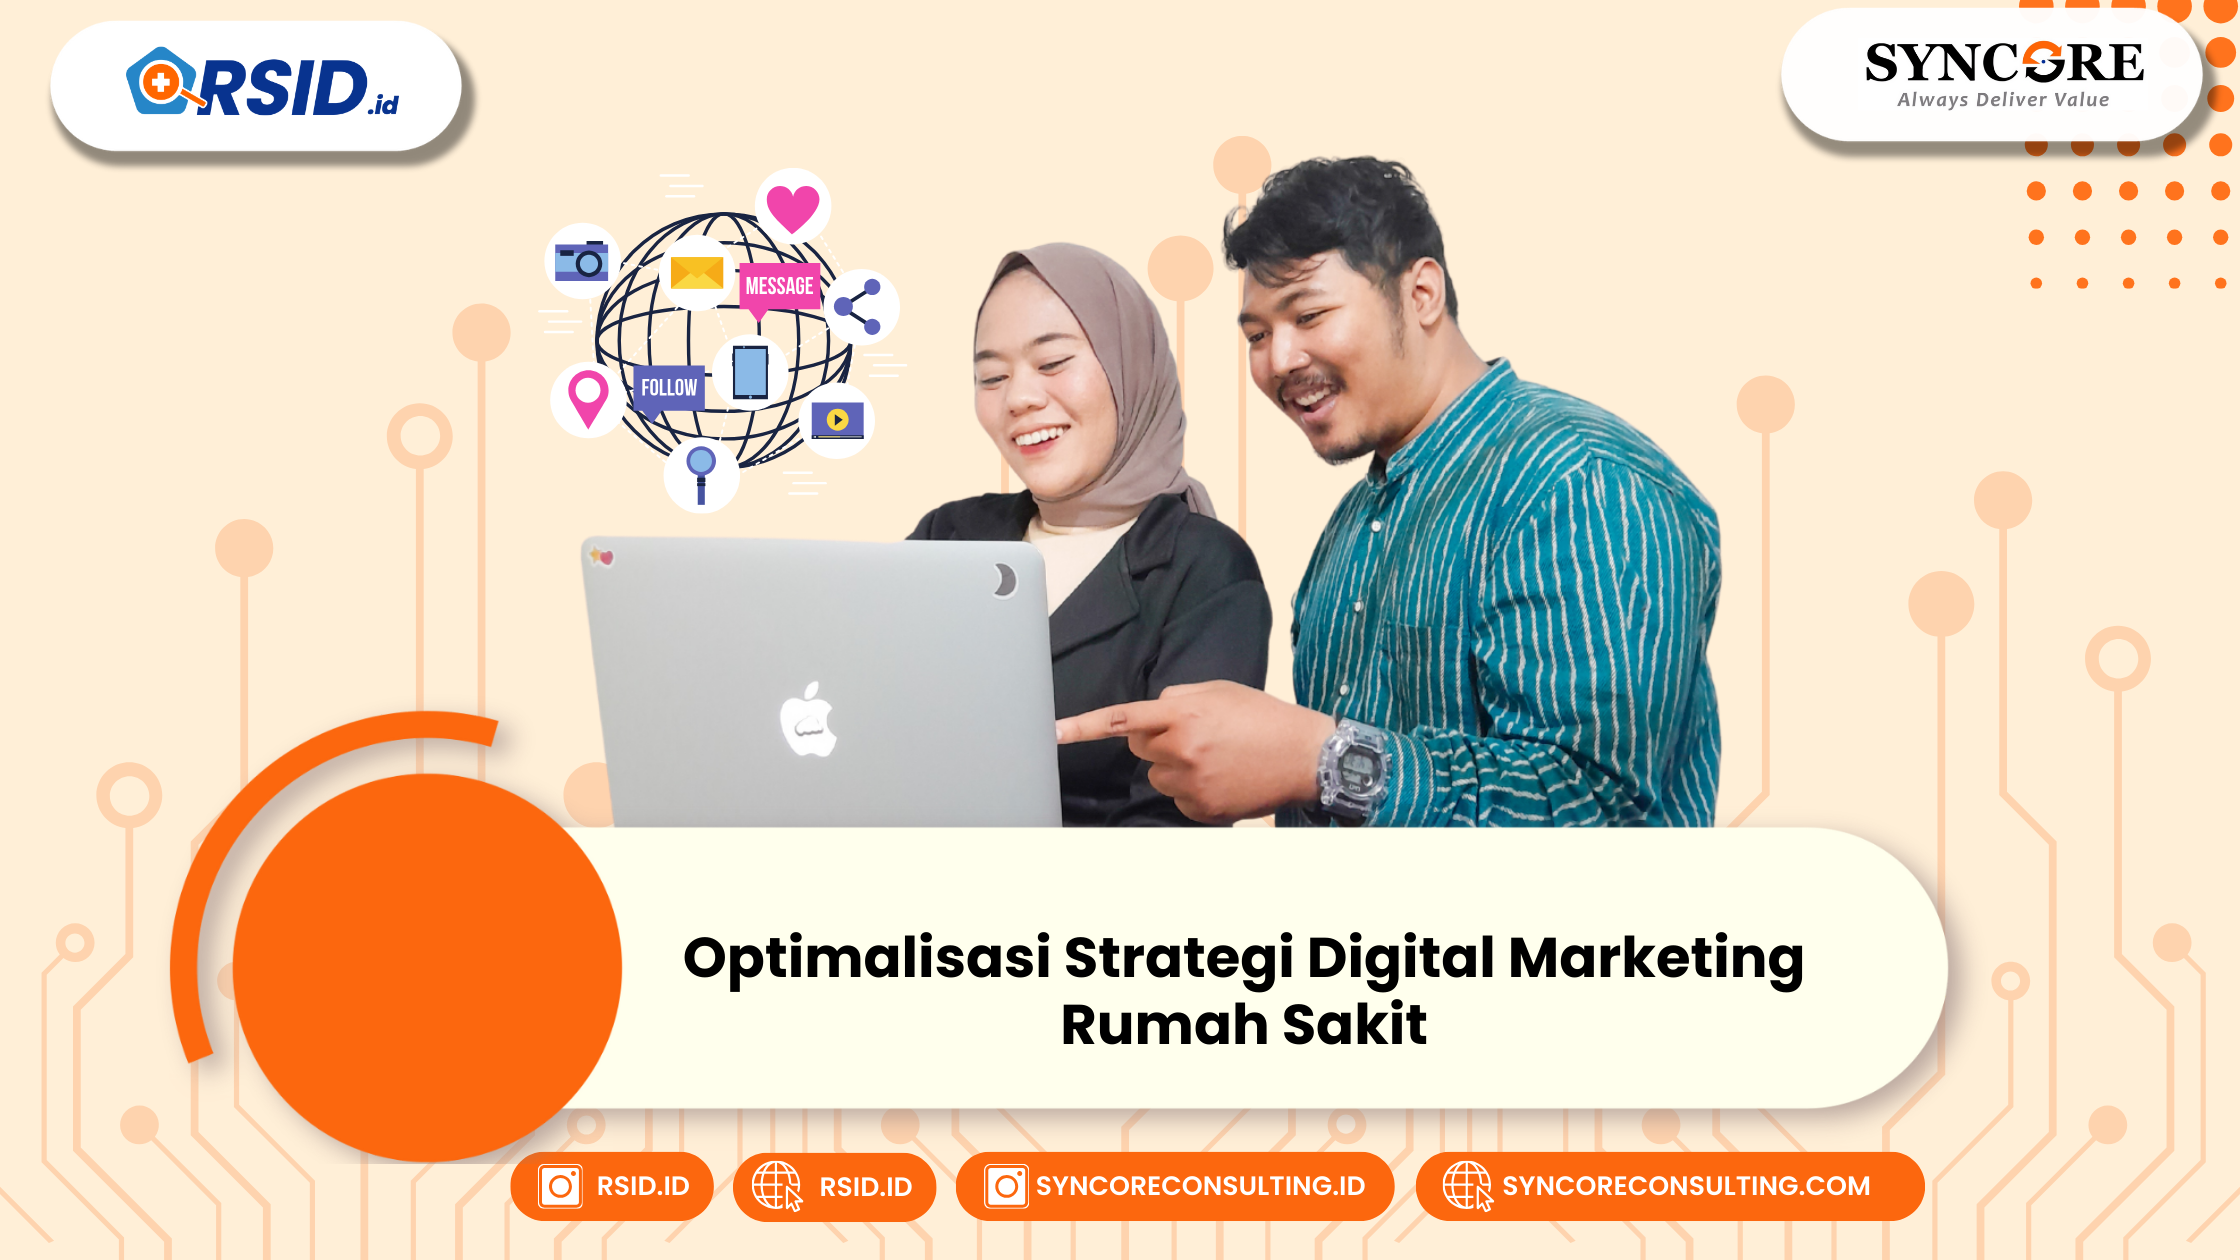 Optimalisasi Strategi Digital Marketing bagi Rumah Sakit